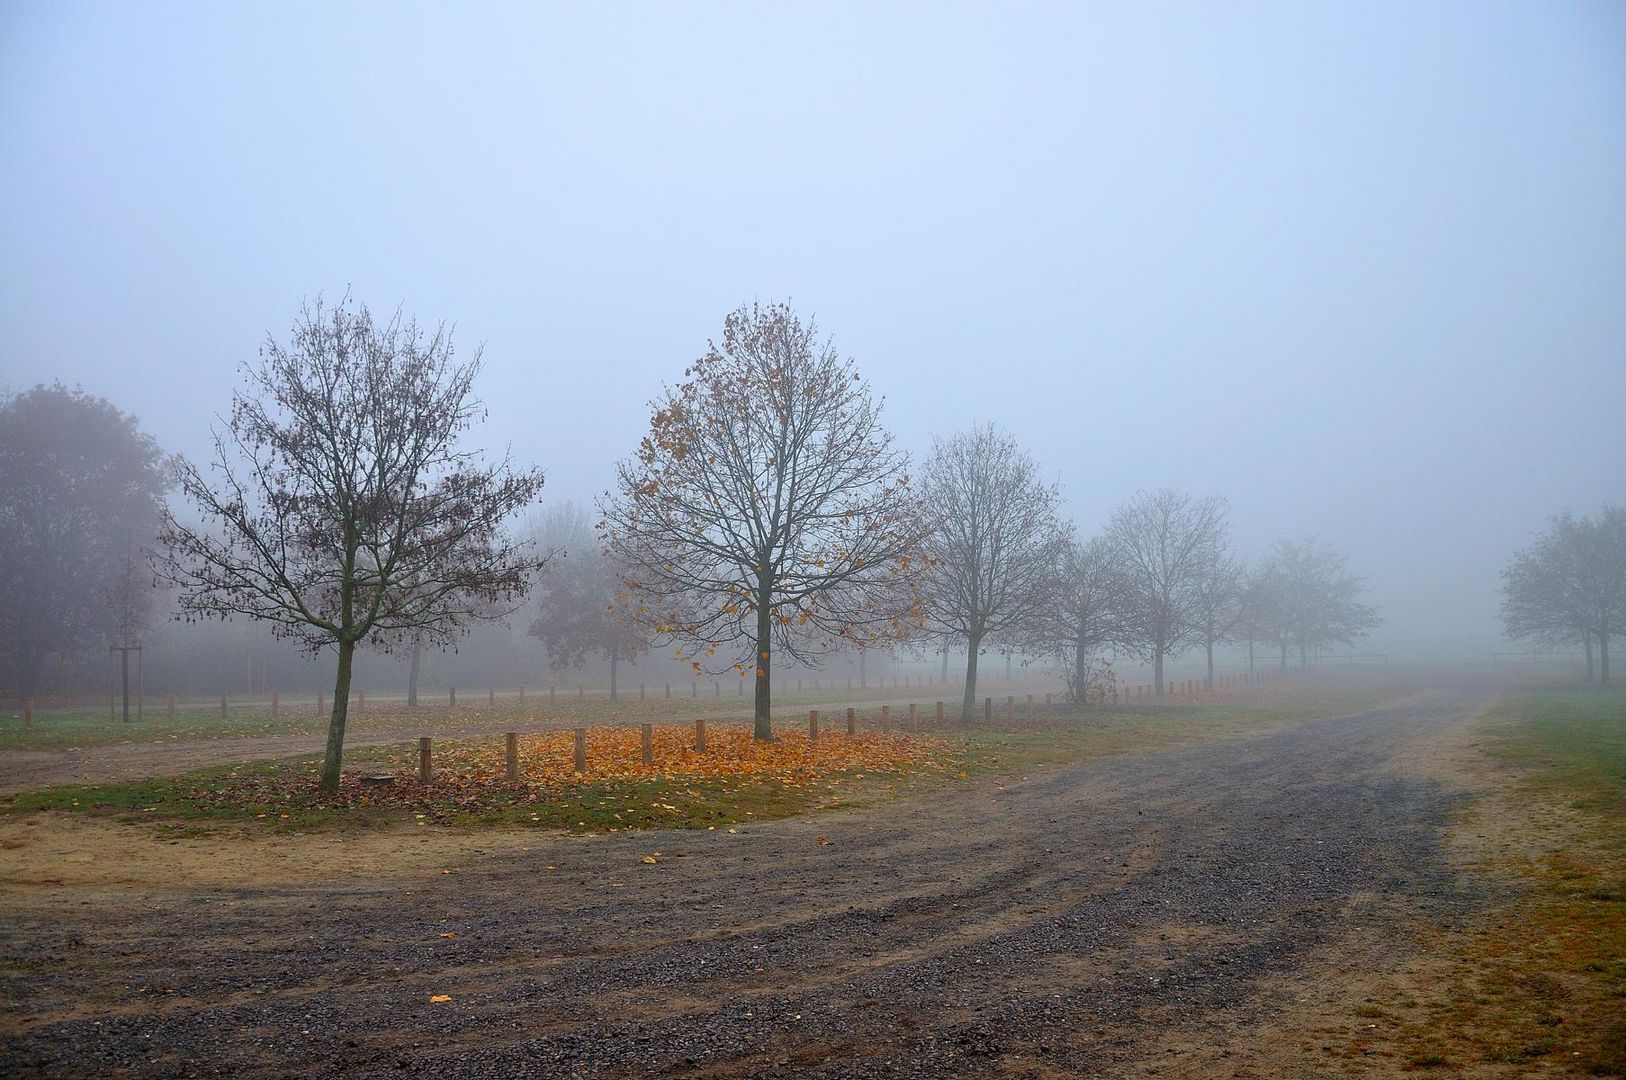 Herbst-Nebel am O-See - Parkplatz